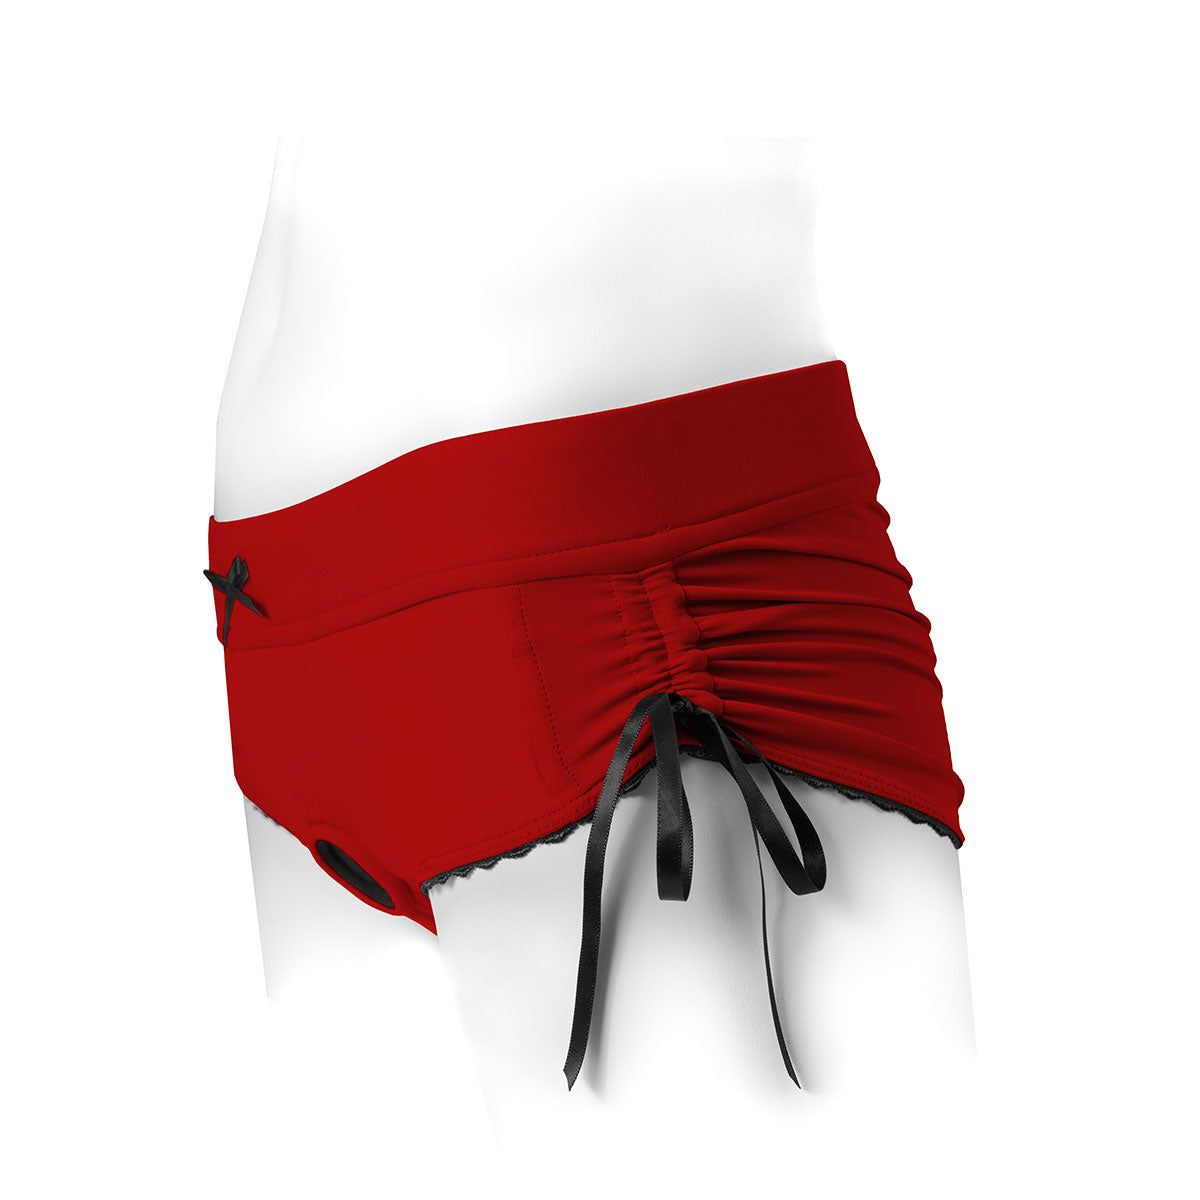 SpareParts Sasha Harness Red-Black Nylon - Medium Intimates Adult Boutique